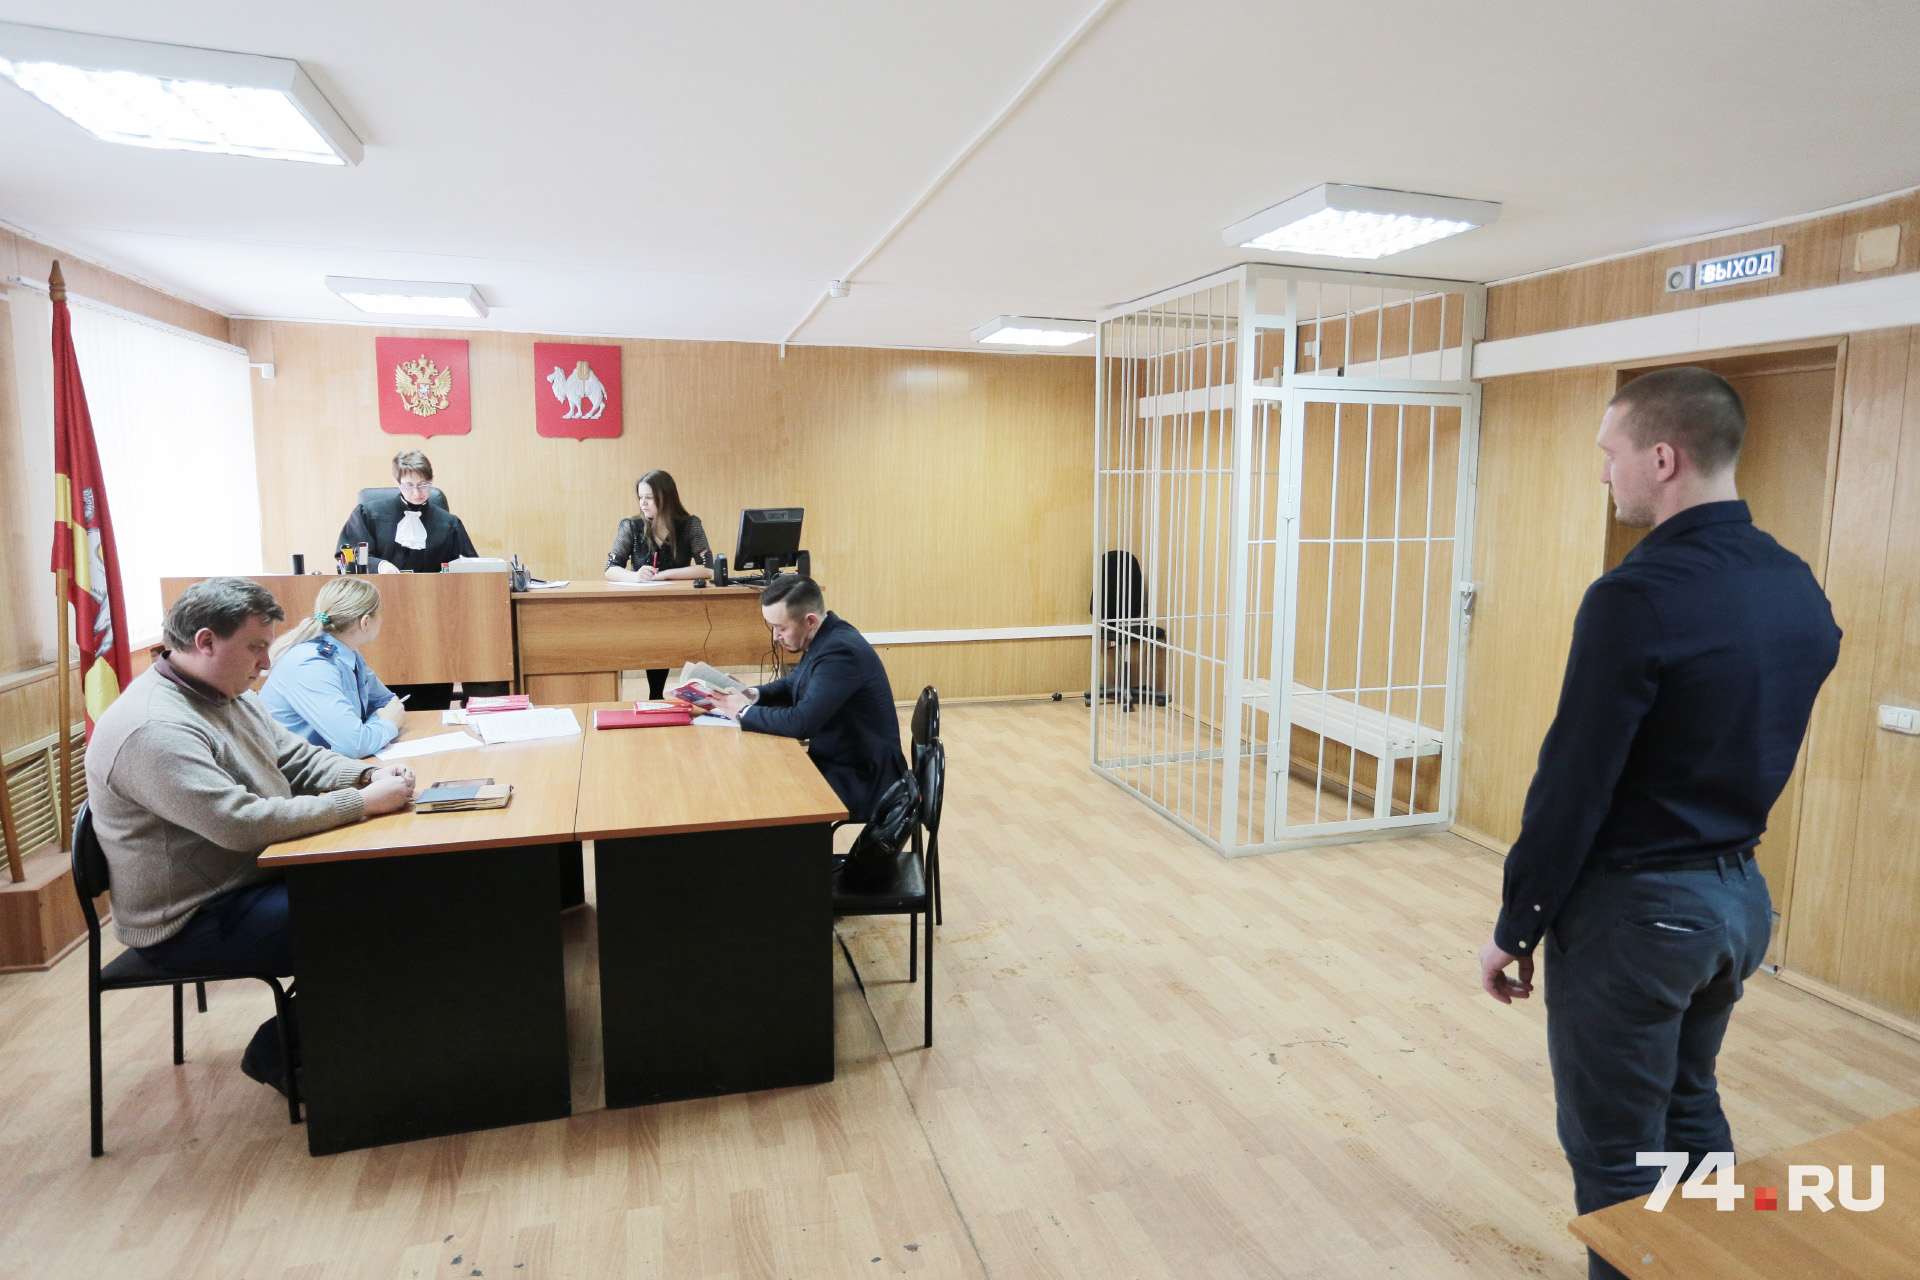 Кондрашову отказали в суде в особом порядке, который предусматривает максимально мягкое наказание